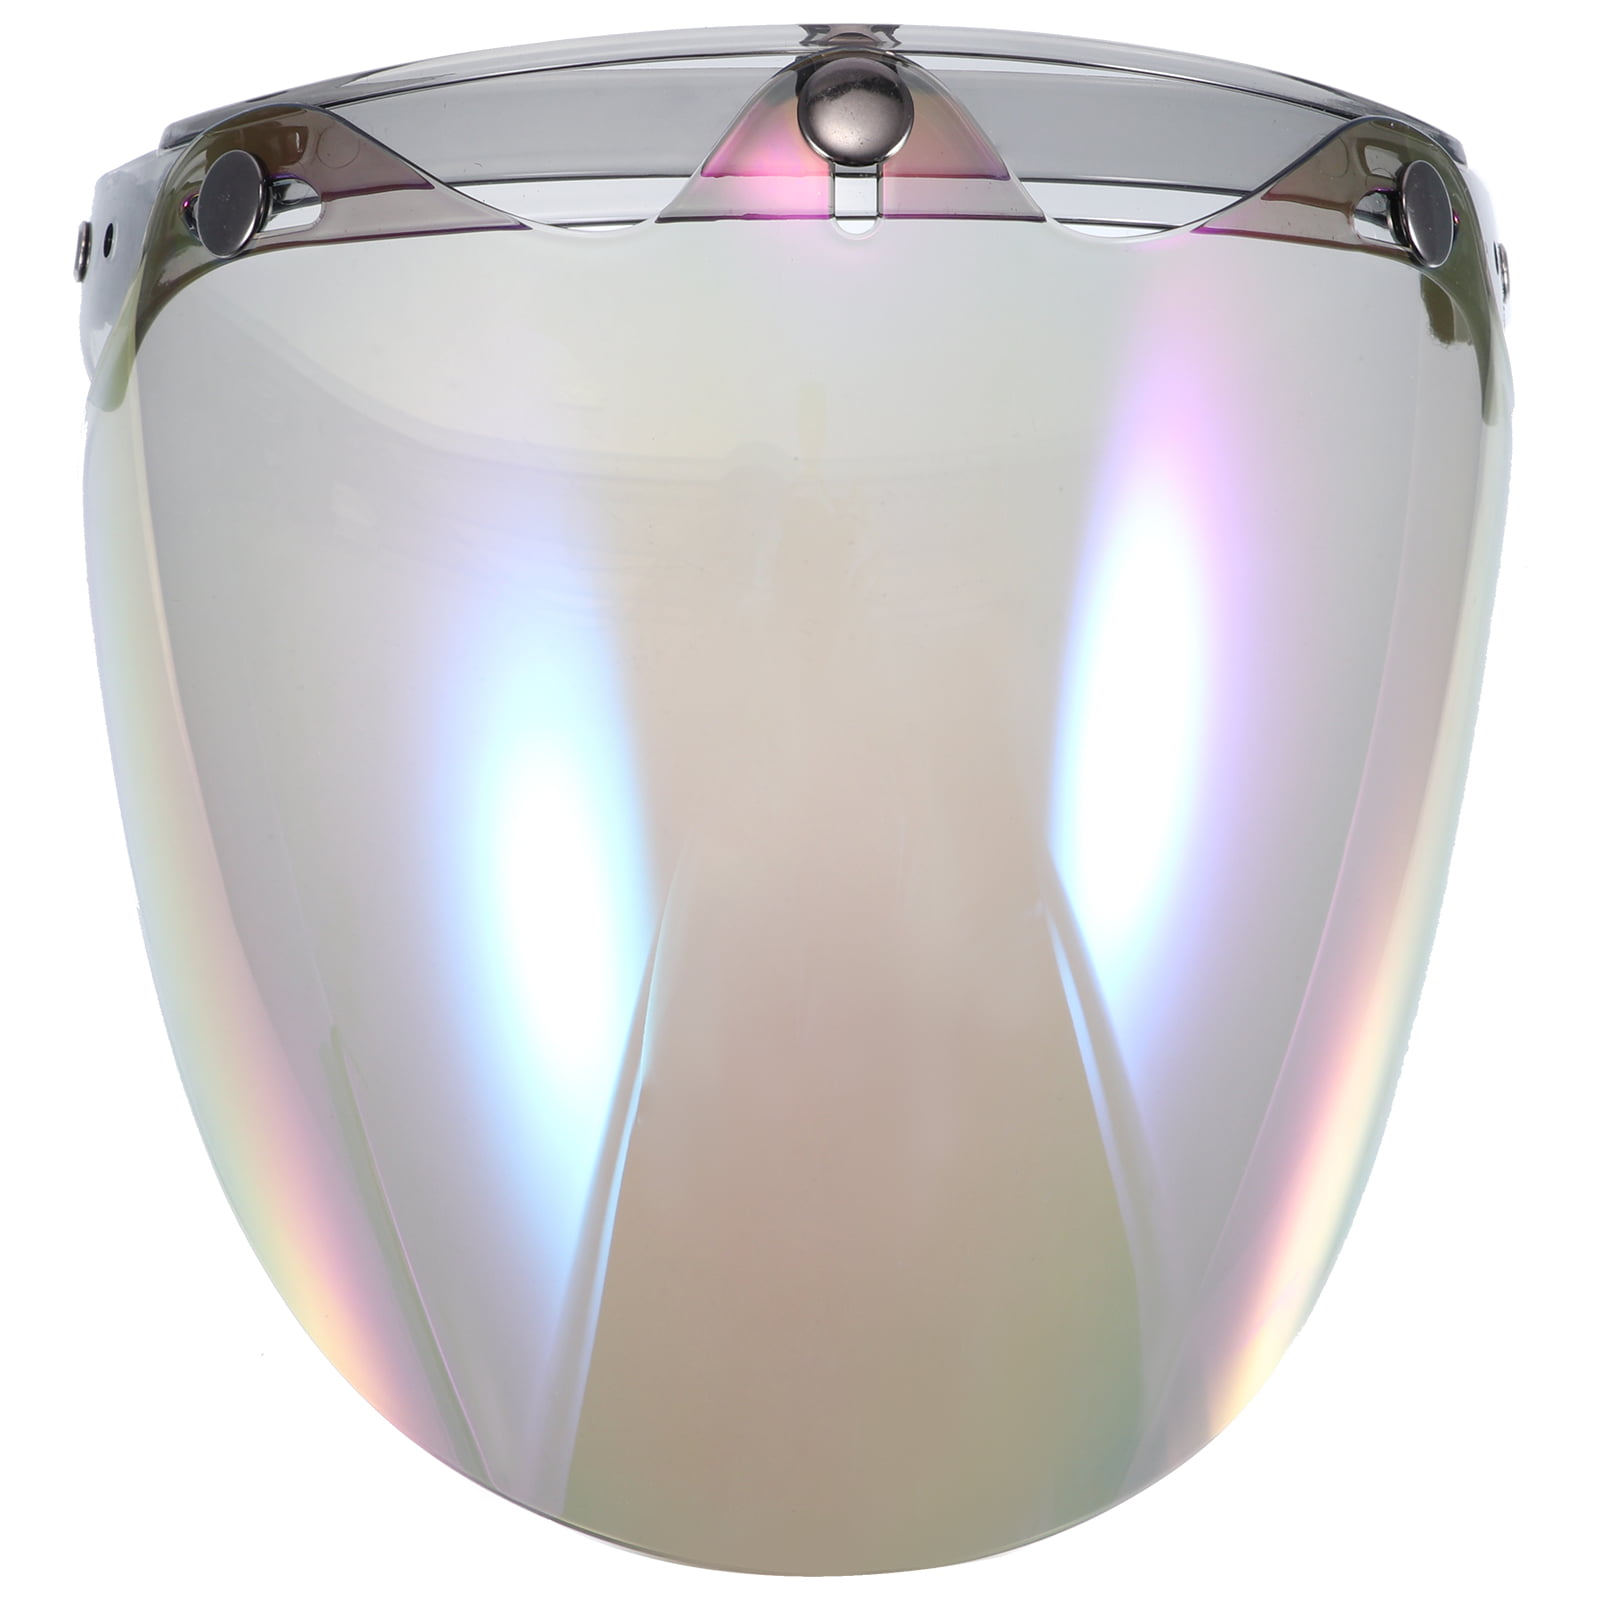 3 Snap Bubble Face Shield Visor For Open Face Cafe Retro Helmets Iridium Rainbow